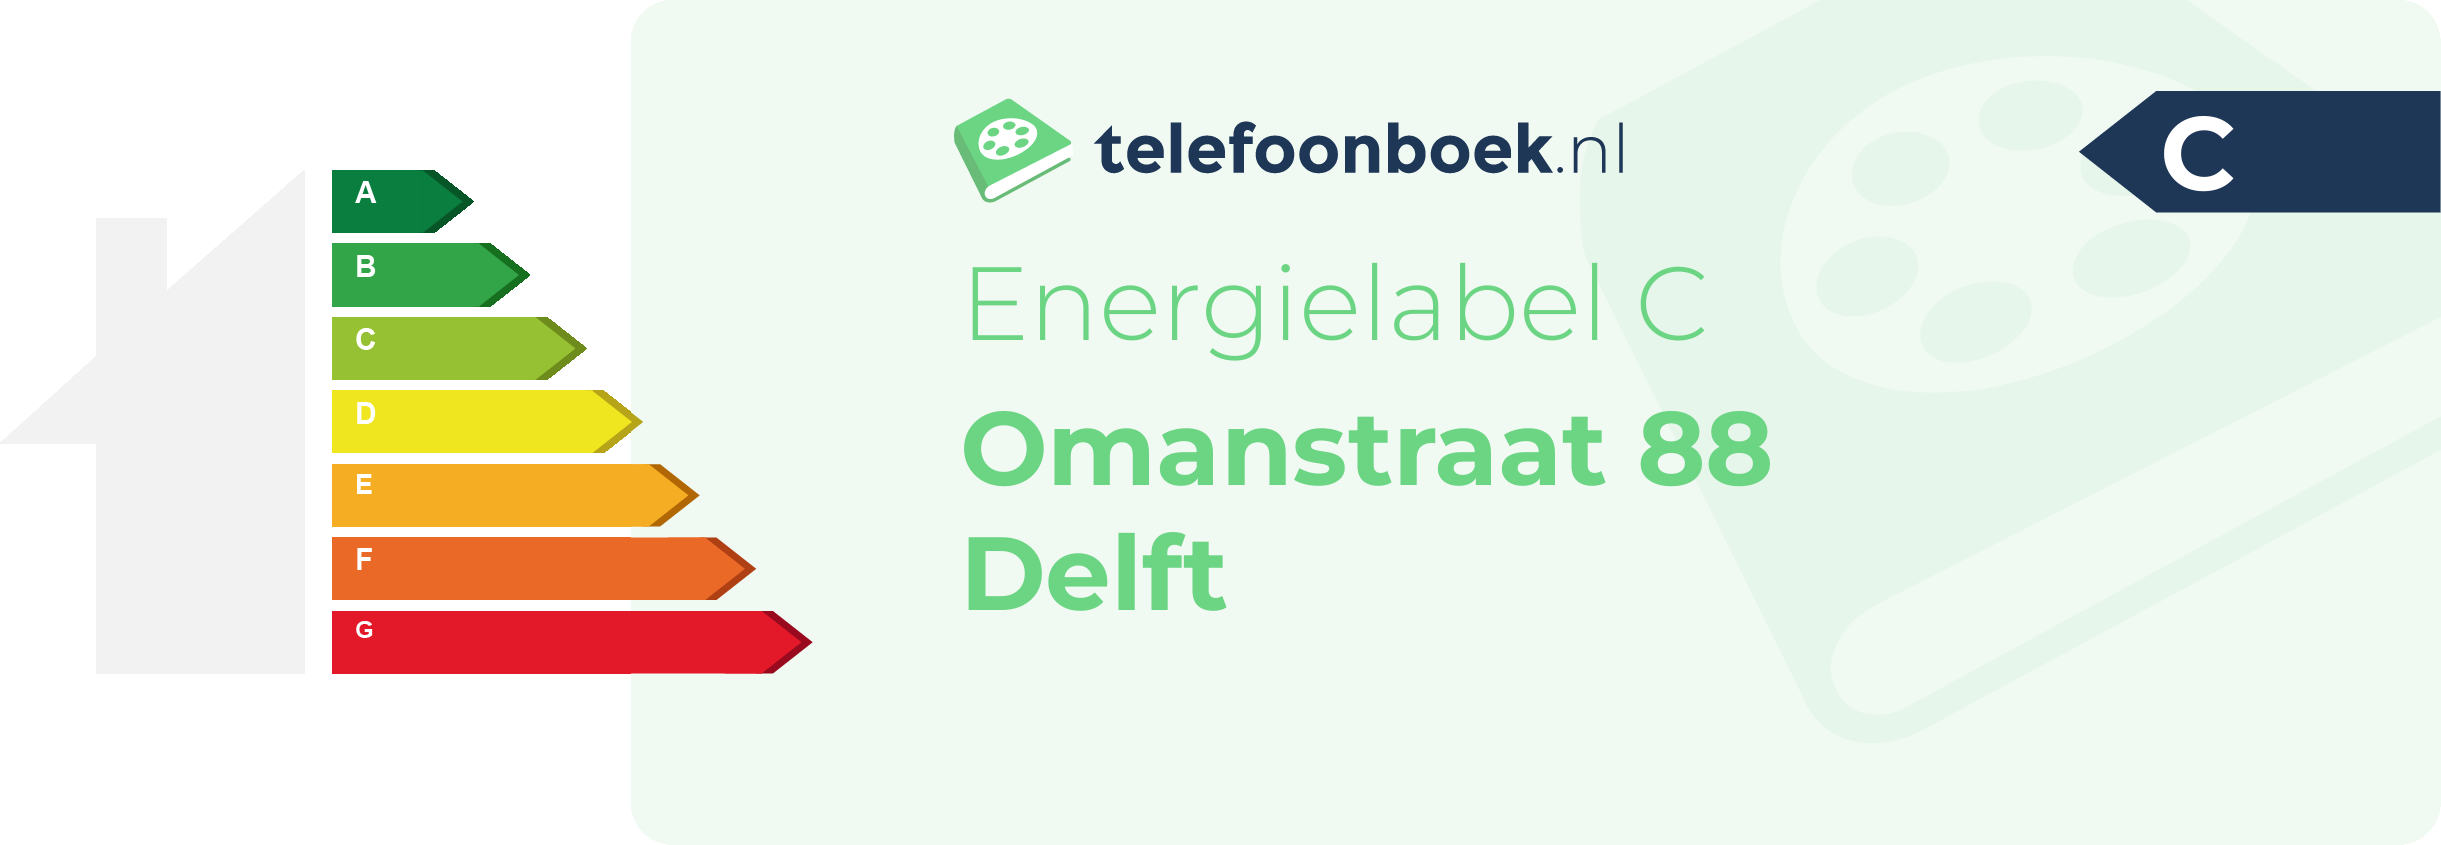 Energielabel Omanstraat 88 Delft